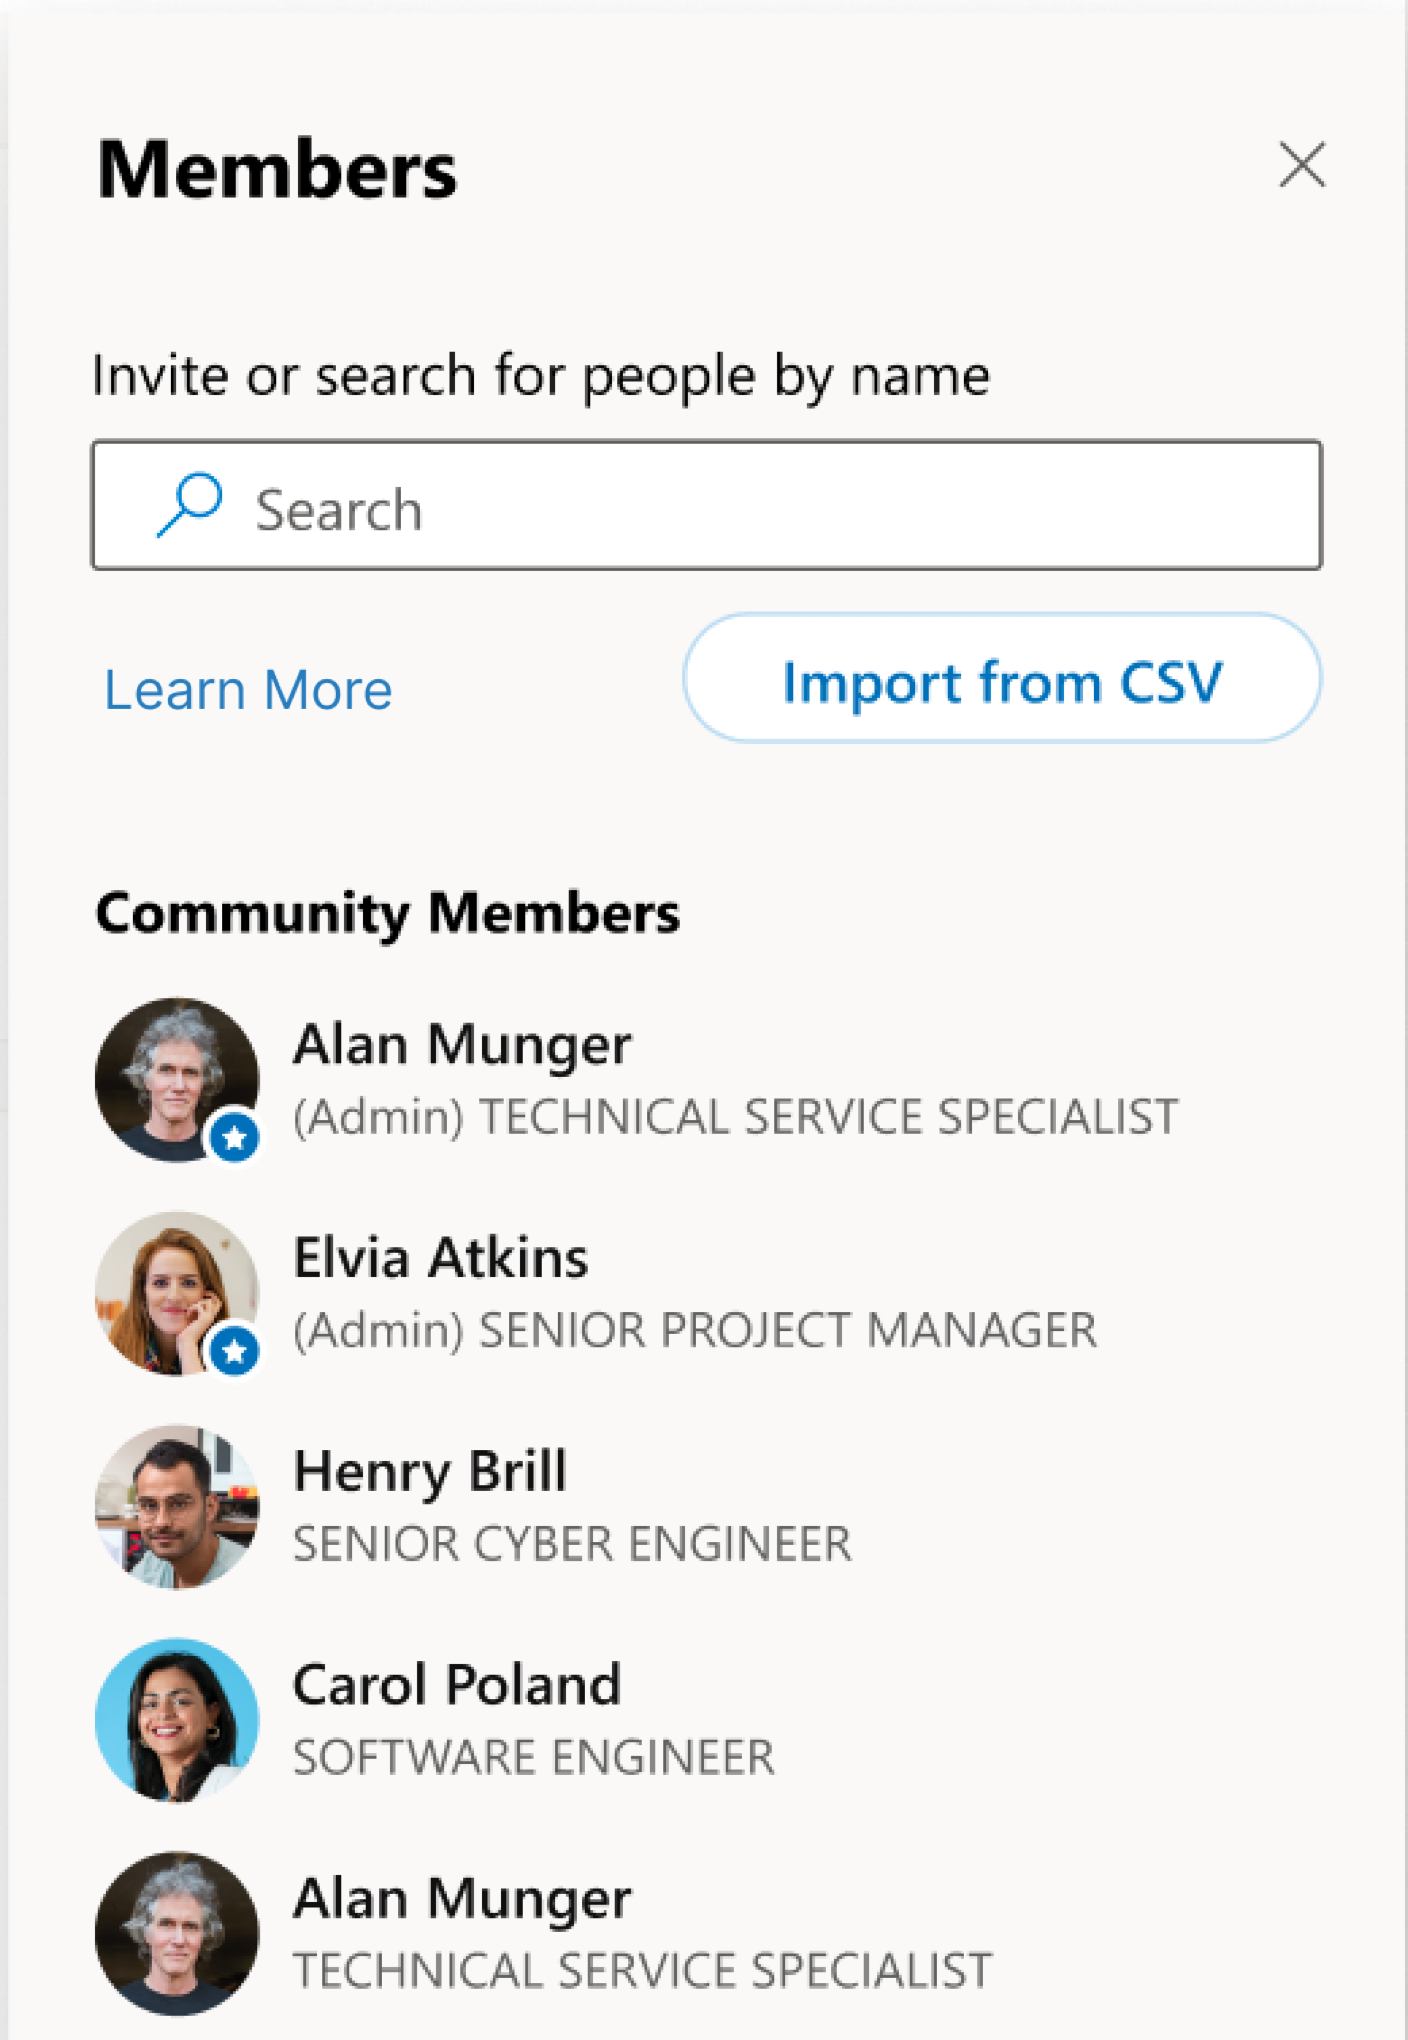 Keresse meg a CSV-fájl importálása lehetőséget a tagok alatt a jobb oldali panelen